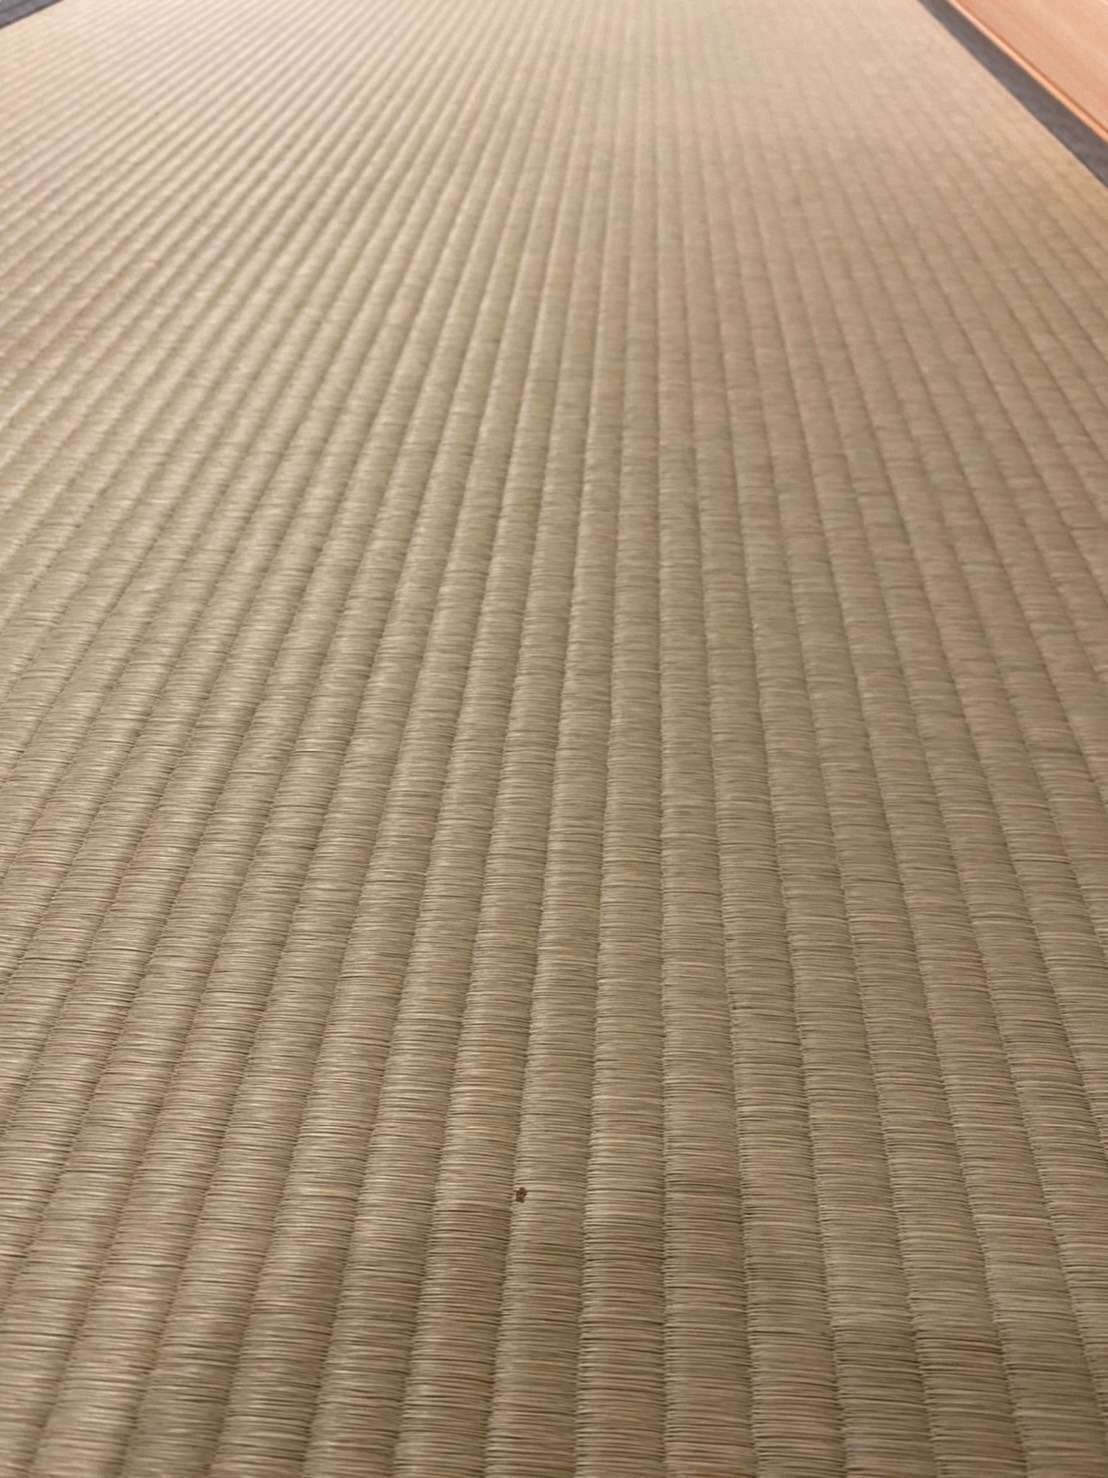 藤井家菩提寺に畳を納めました